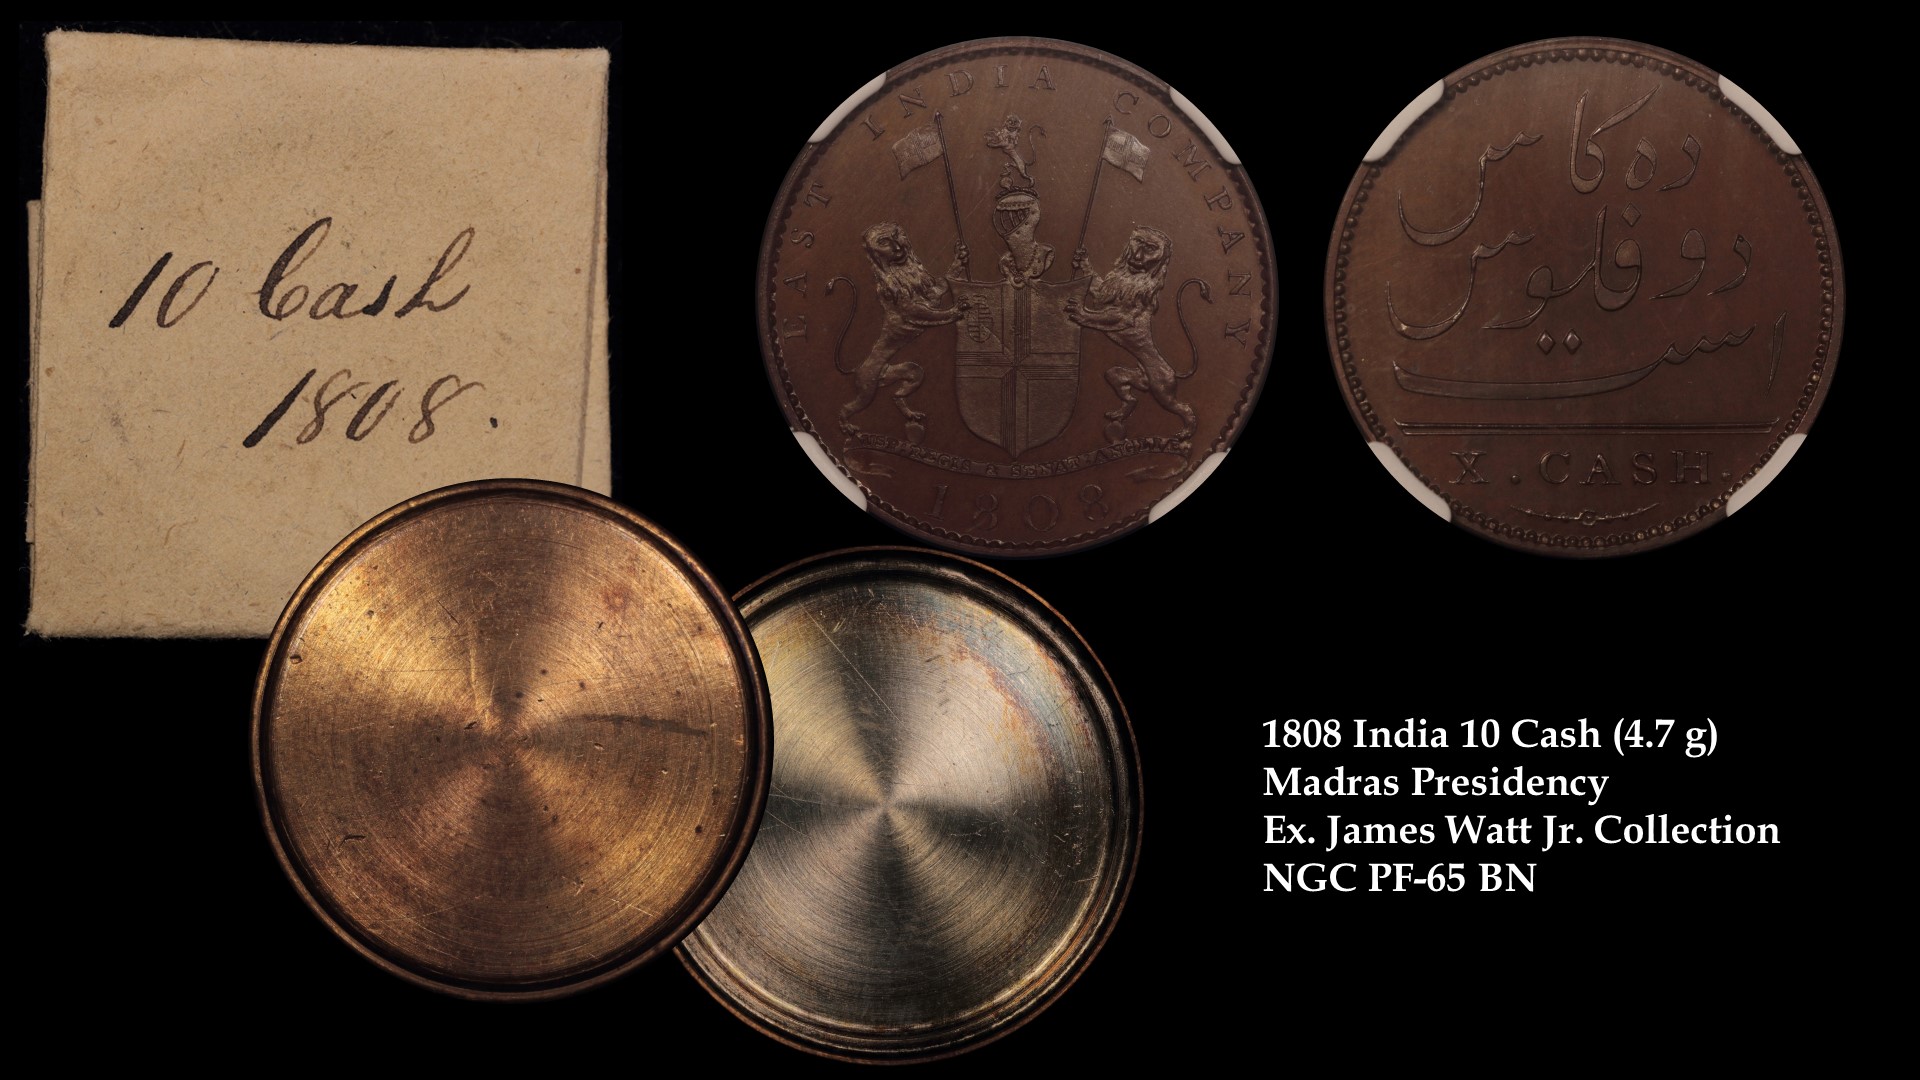 1808 India 10 Cash Madras Presidency 4.7g Ex James Watt Jr..jpg